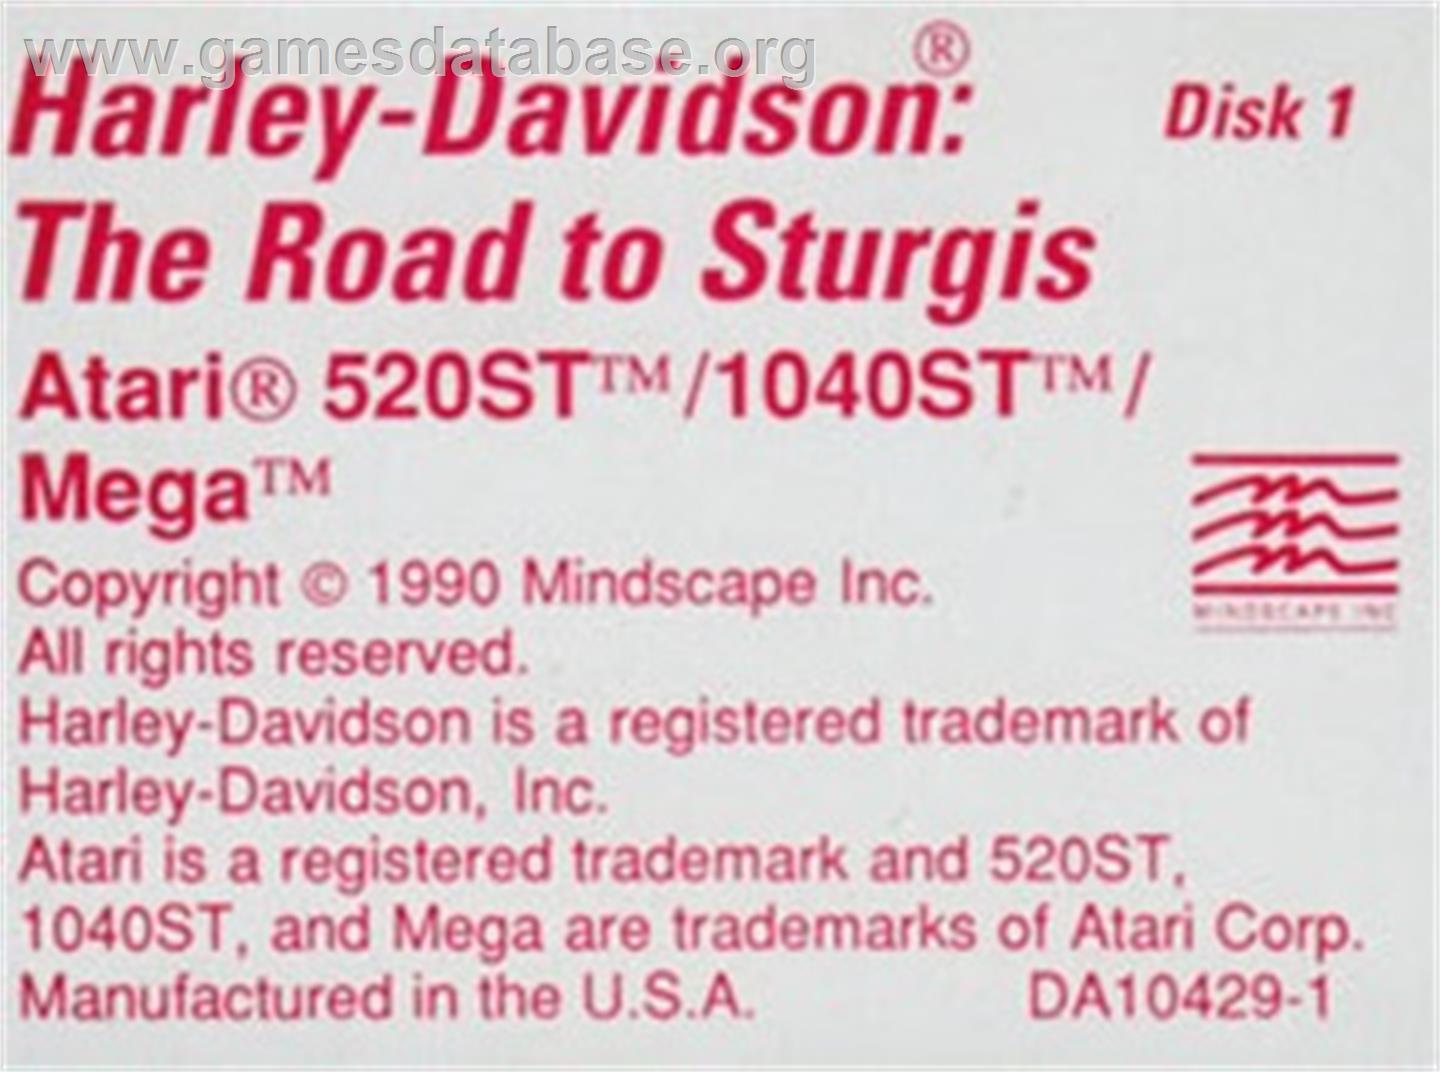 Harley-Davidson: The Road to Sturgis - Atari ST - Artwork - Cartridge Top